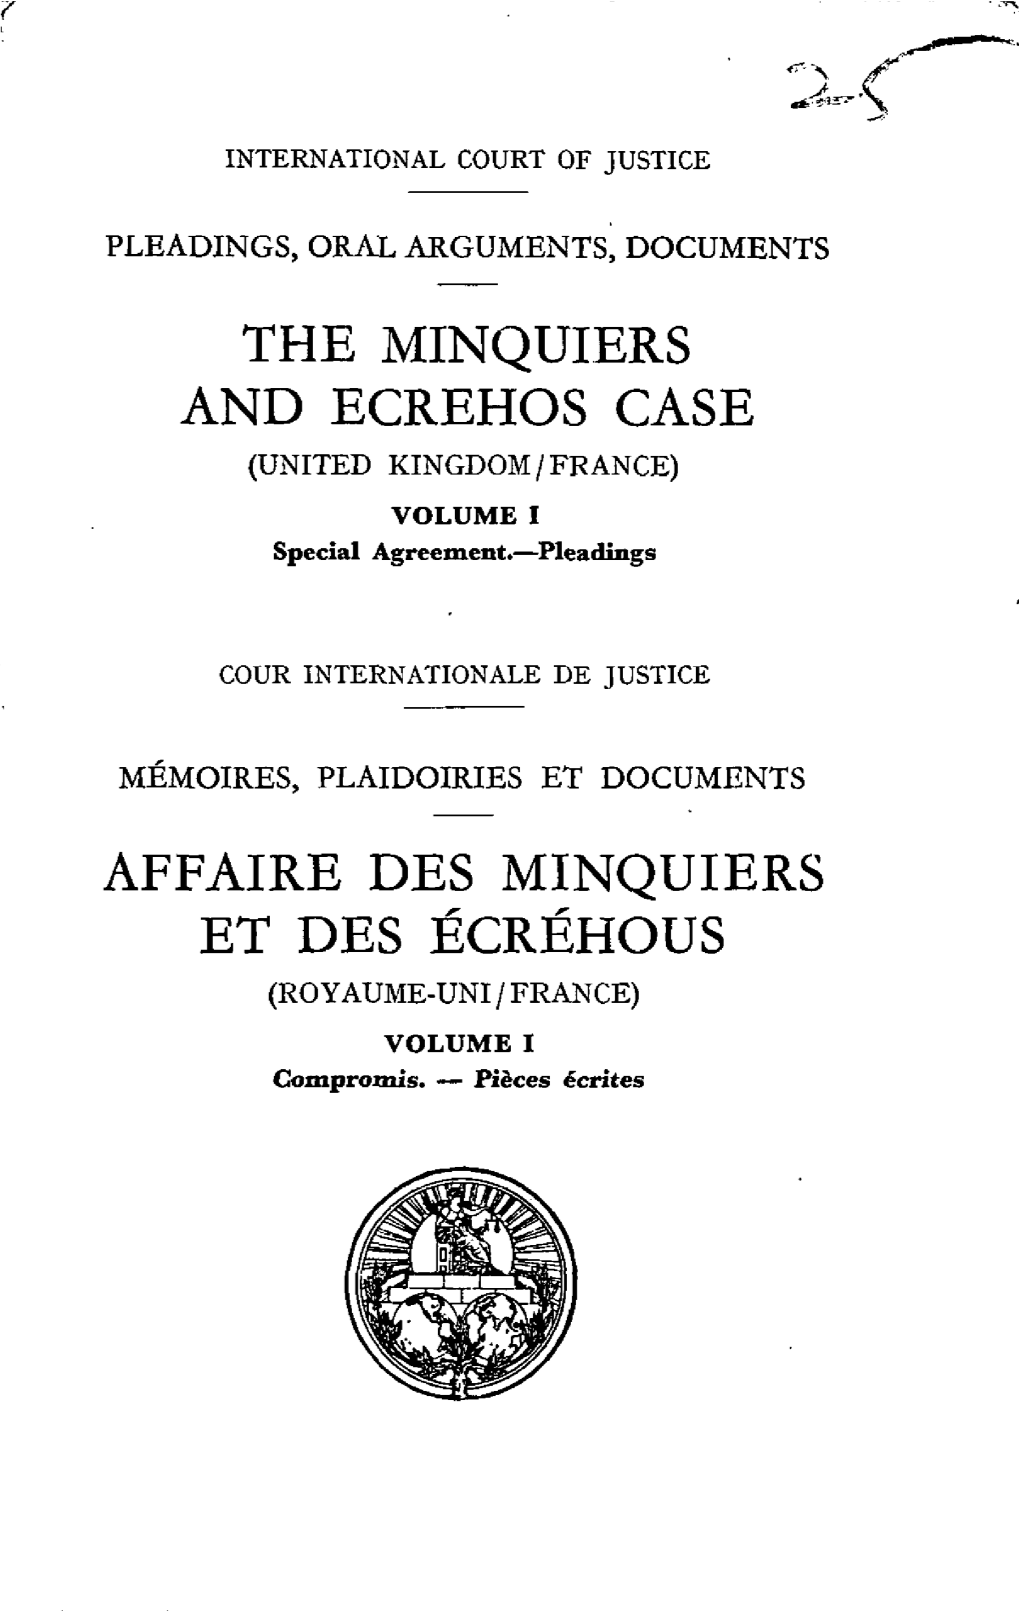 The Minquiers and Ecrehos Case Affaire Des Minquiers